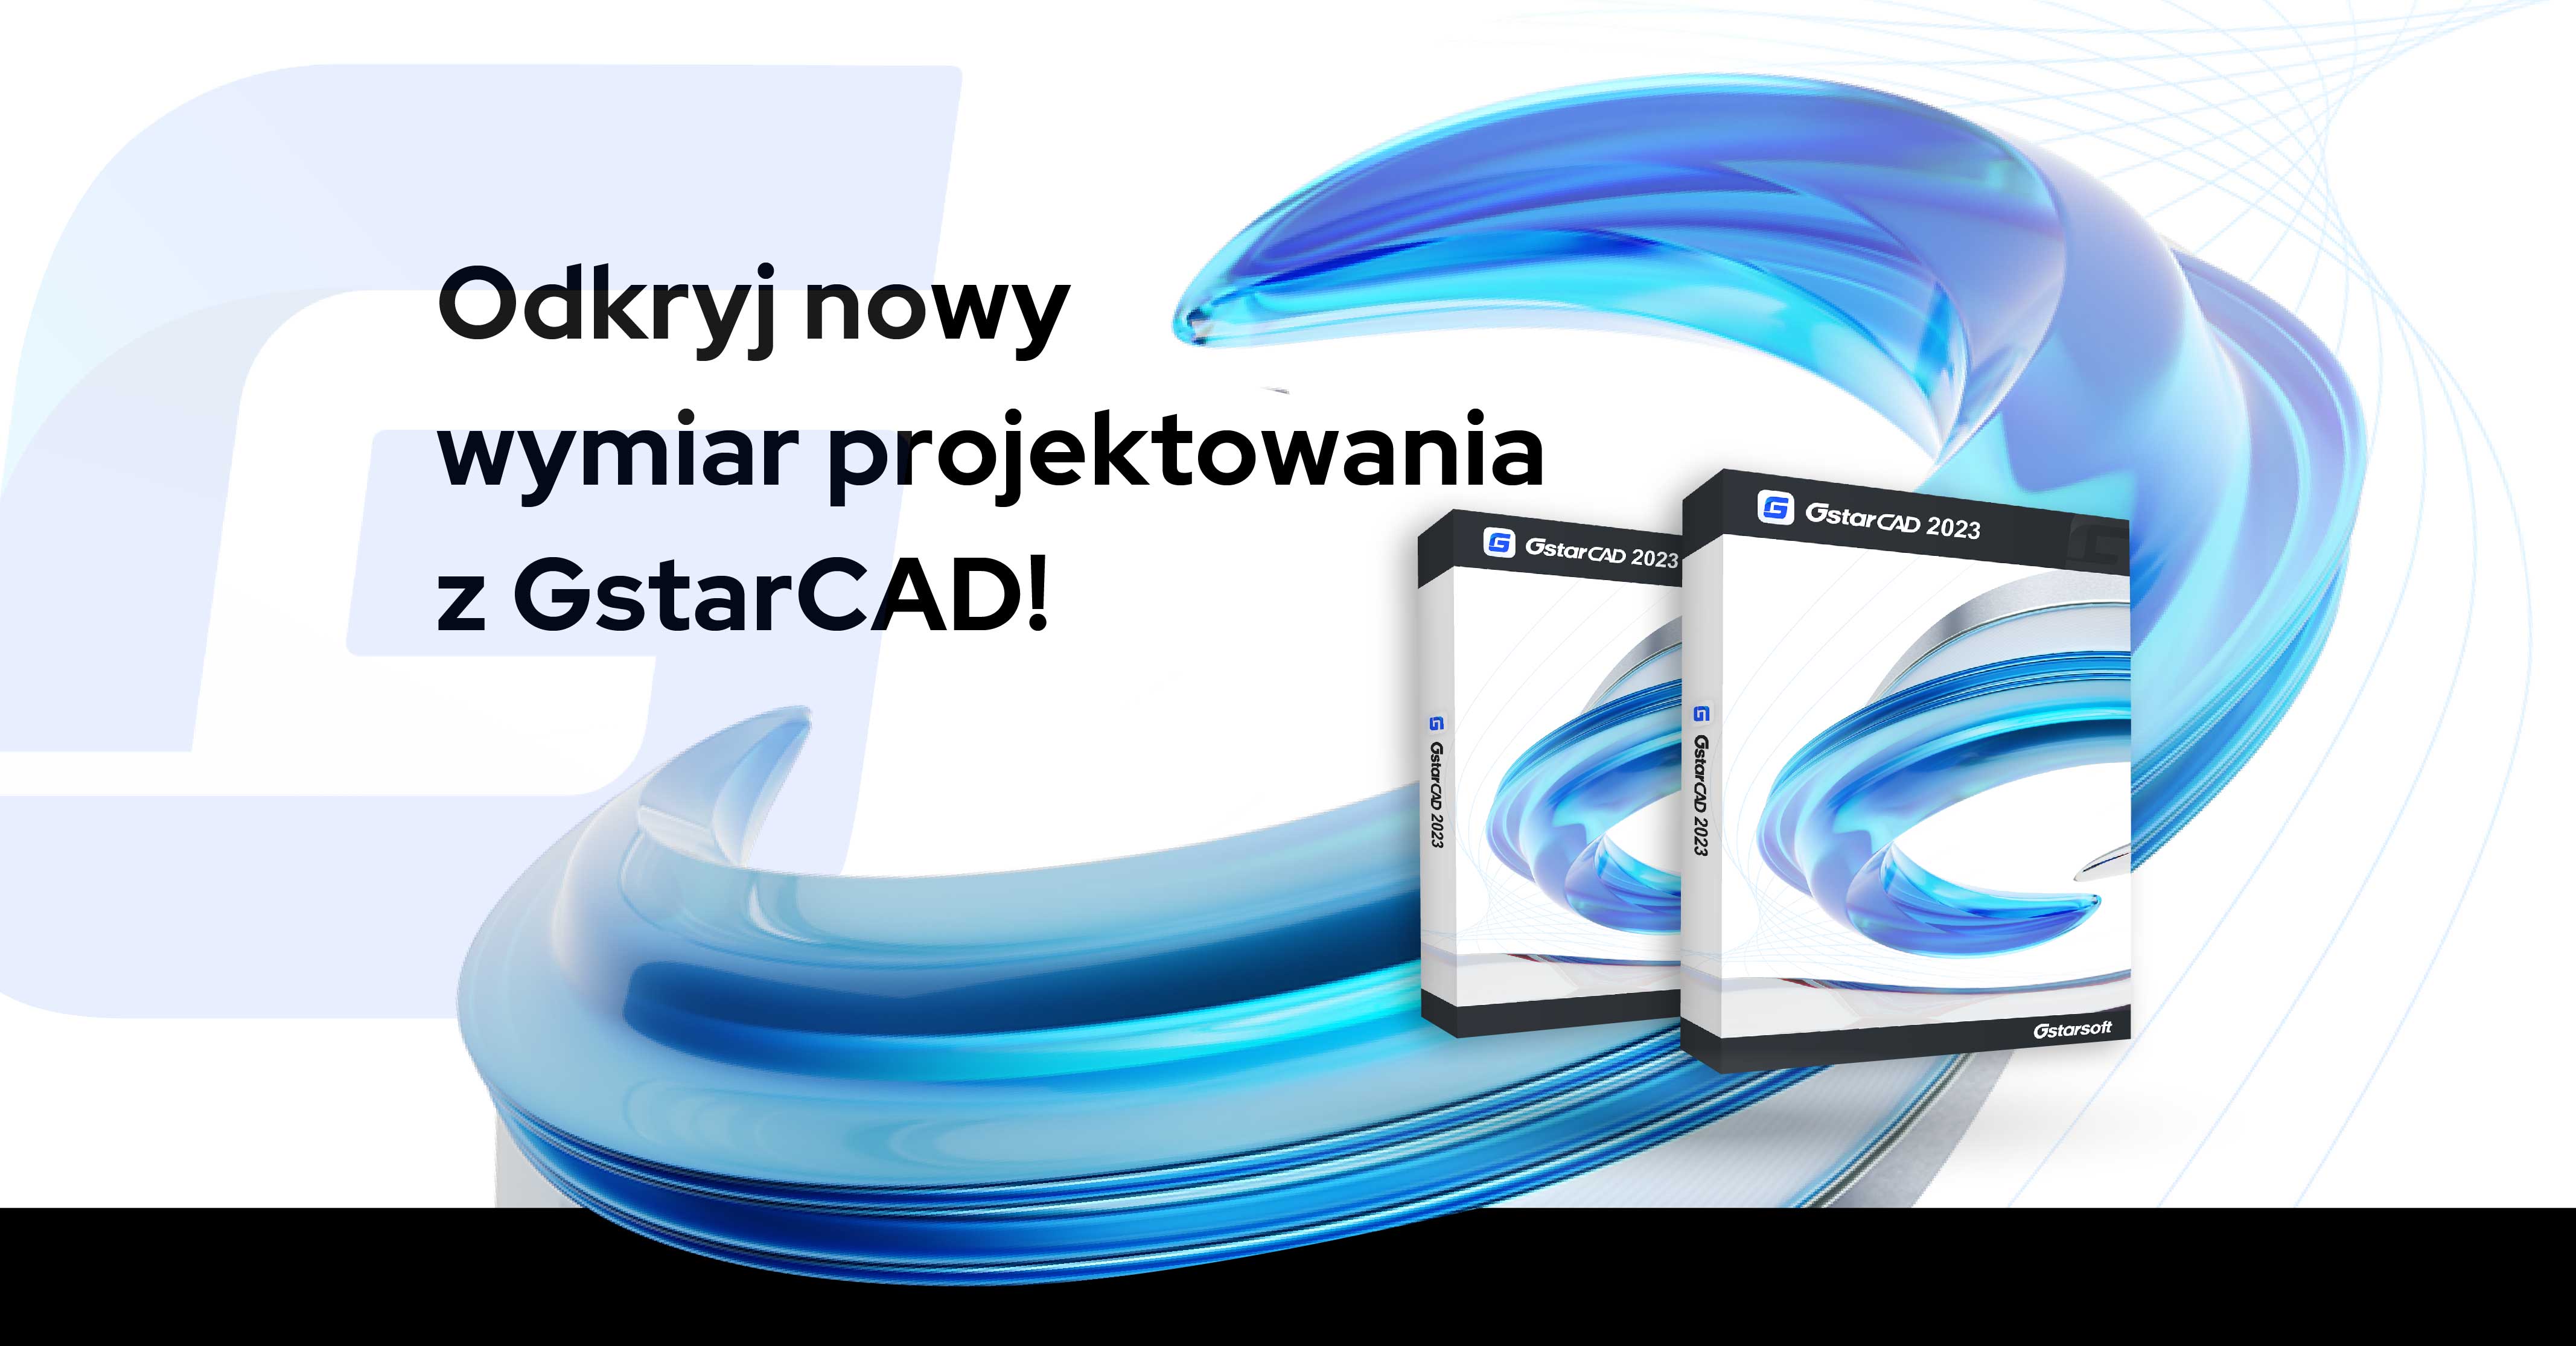 Odkryj nowy wymiar projektowania z GstarCAD!